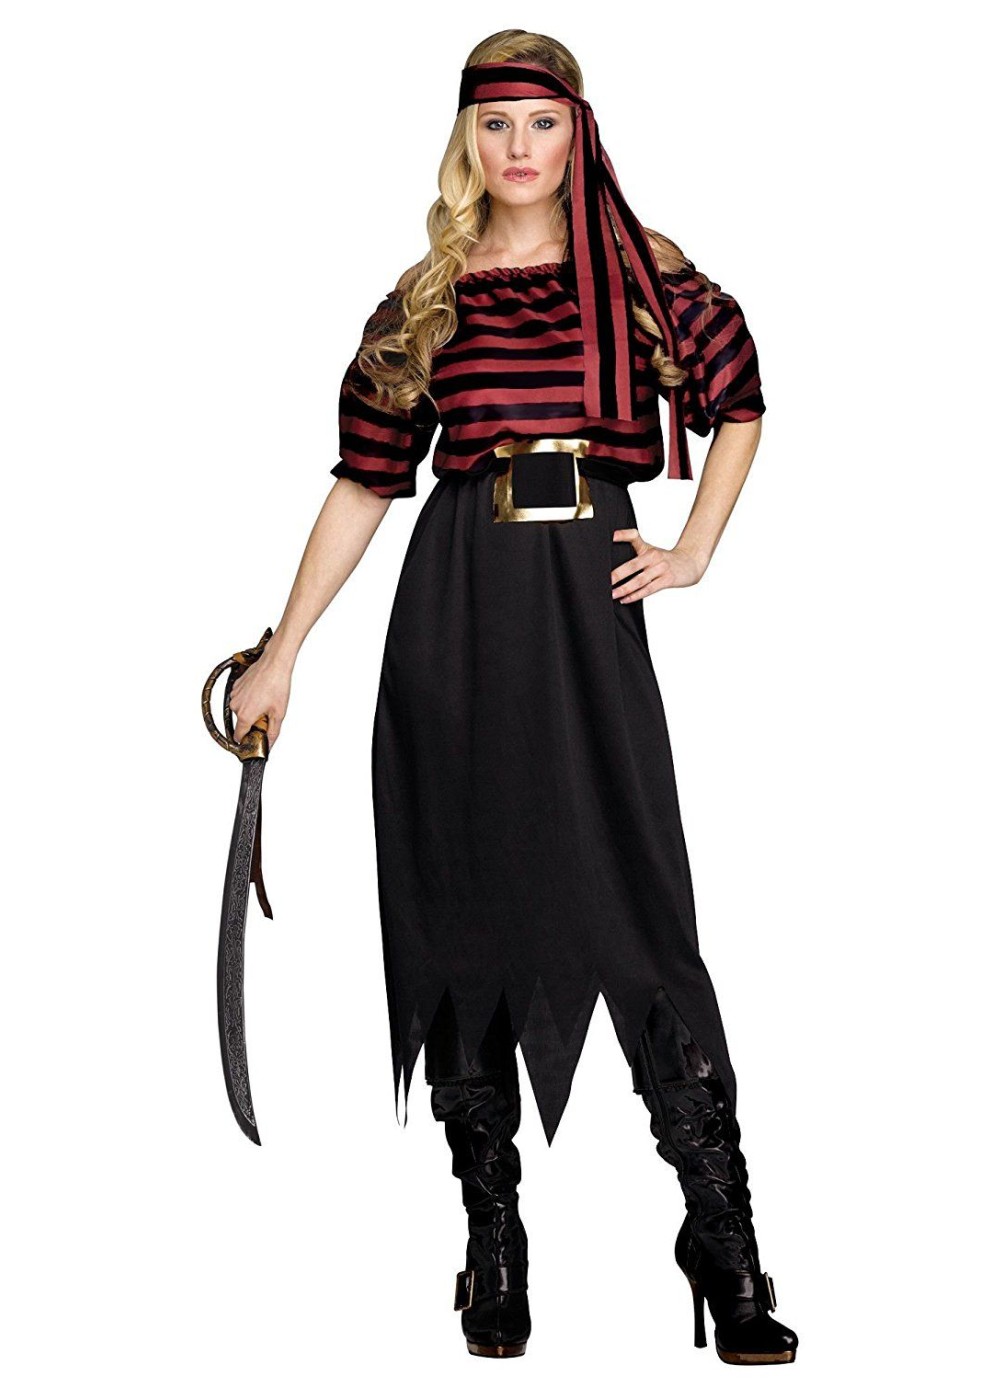  Pirate Maiden Women Costume